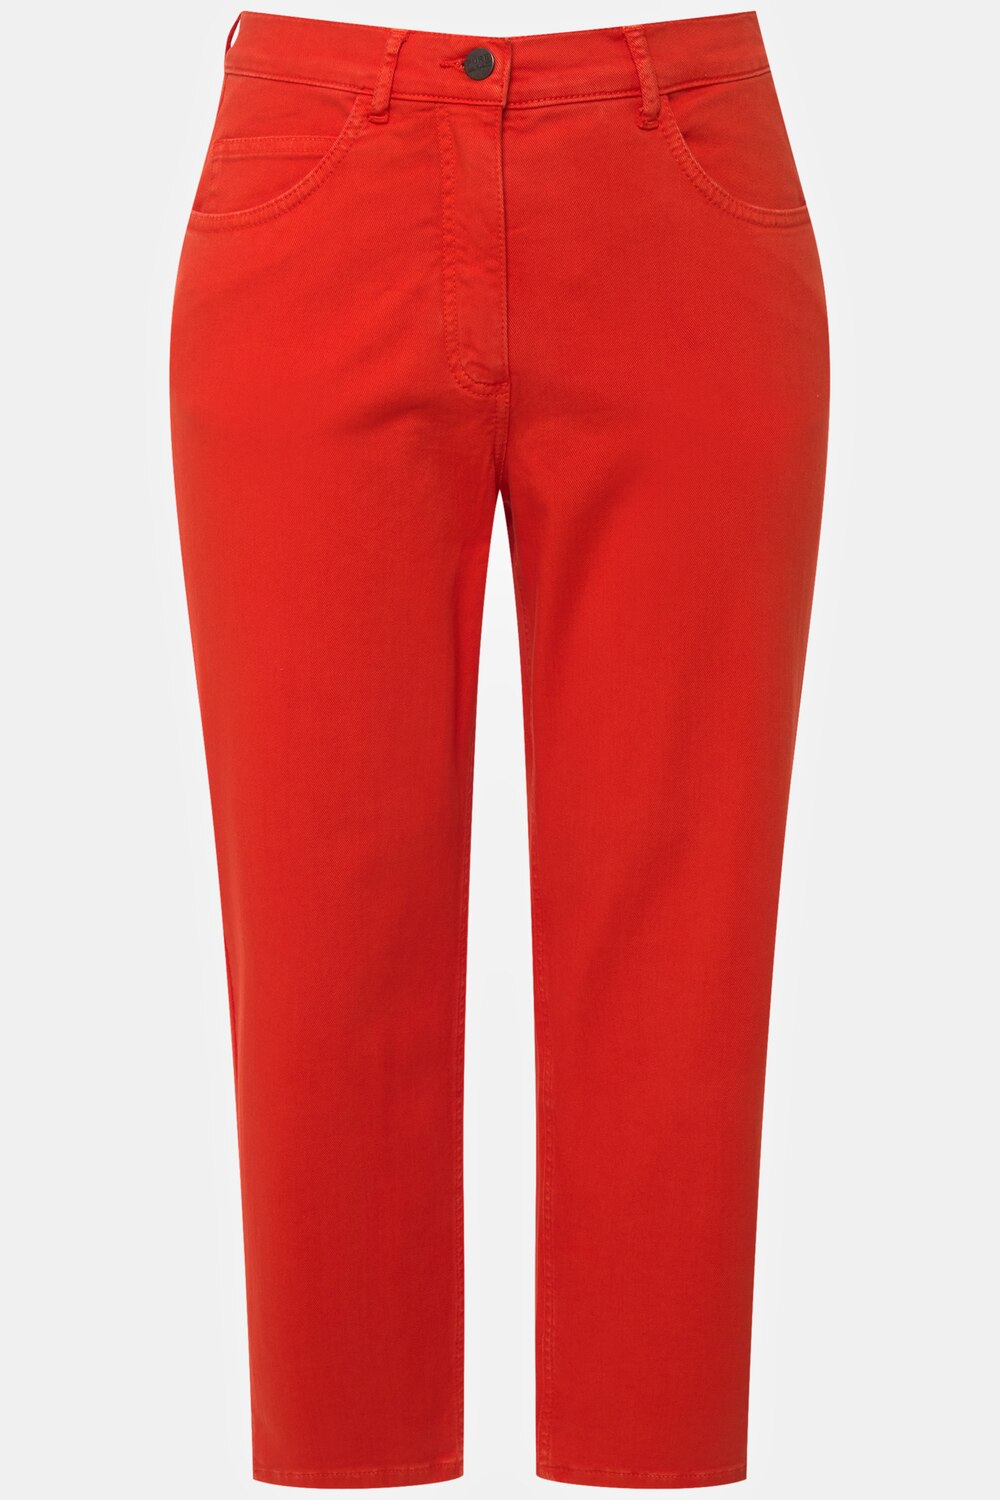 Ulla Popken Grote Maten 7/8-jeans, Dames, oranje, 